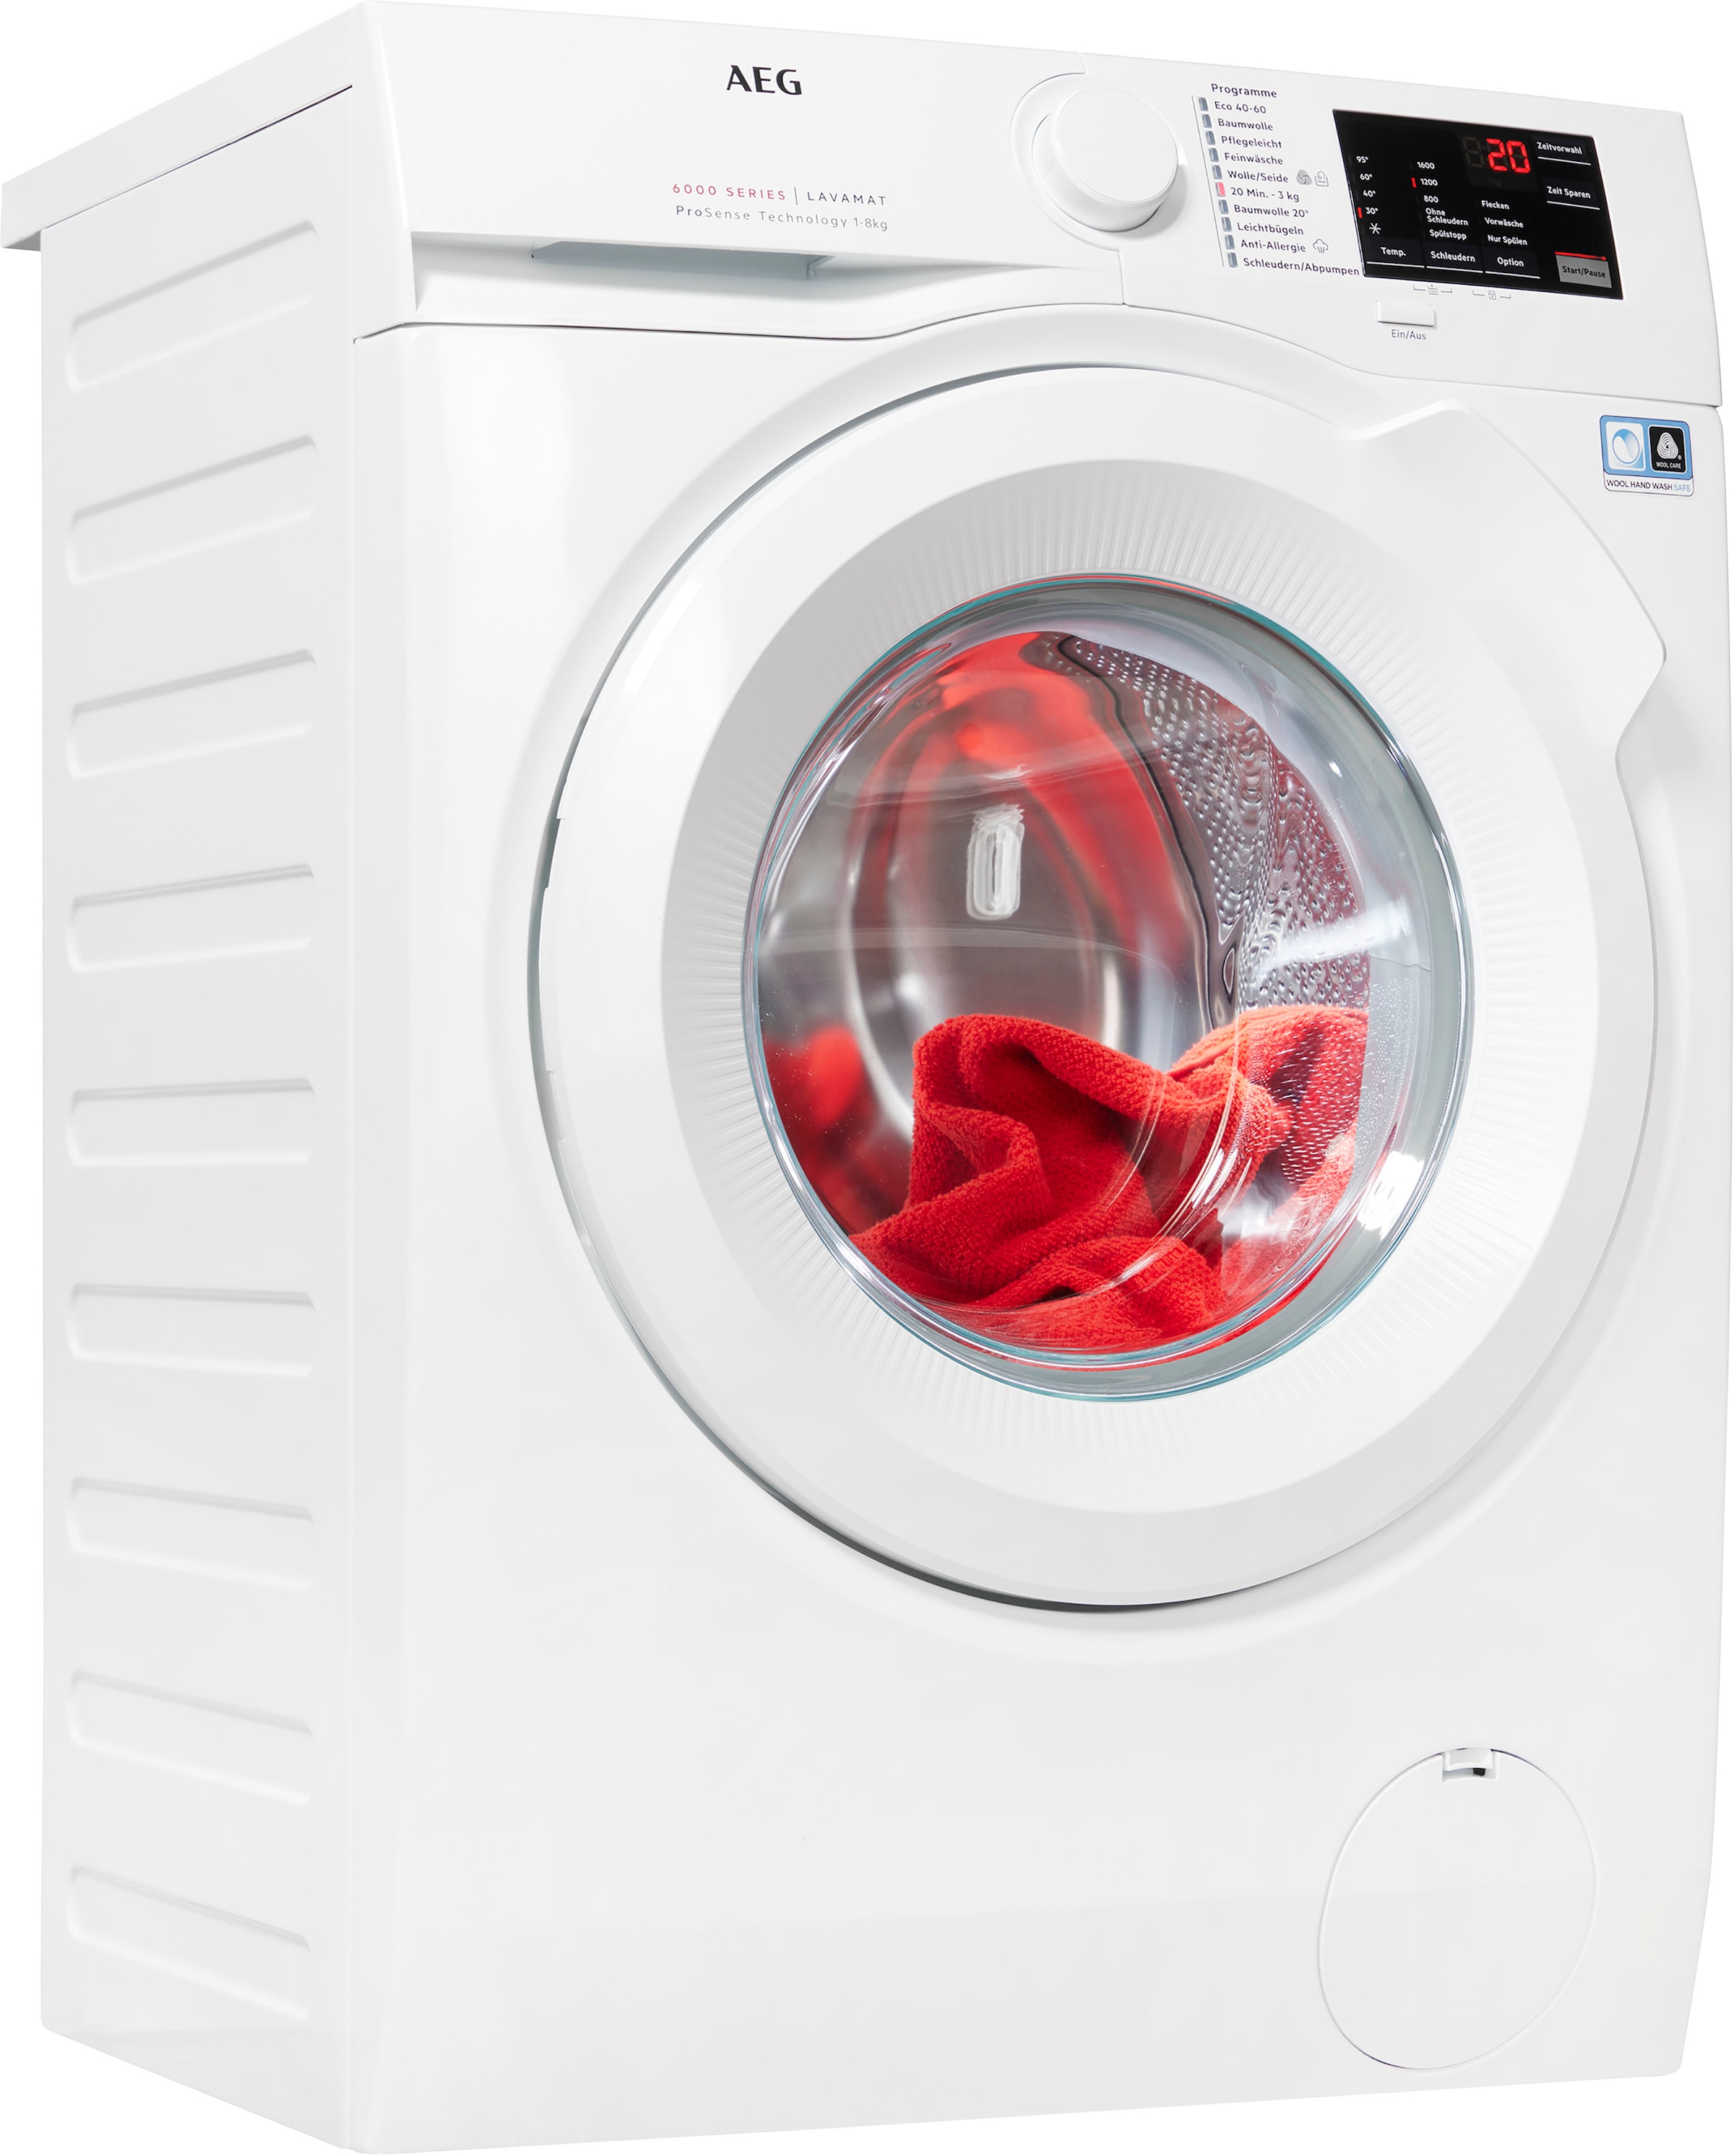 AEG Waschmaschine, Serie 6000, L6FB680FL, kaufen 8 1600 kg, bei OTTO U/min